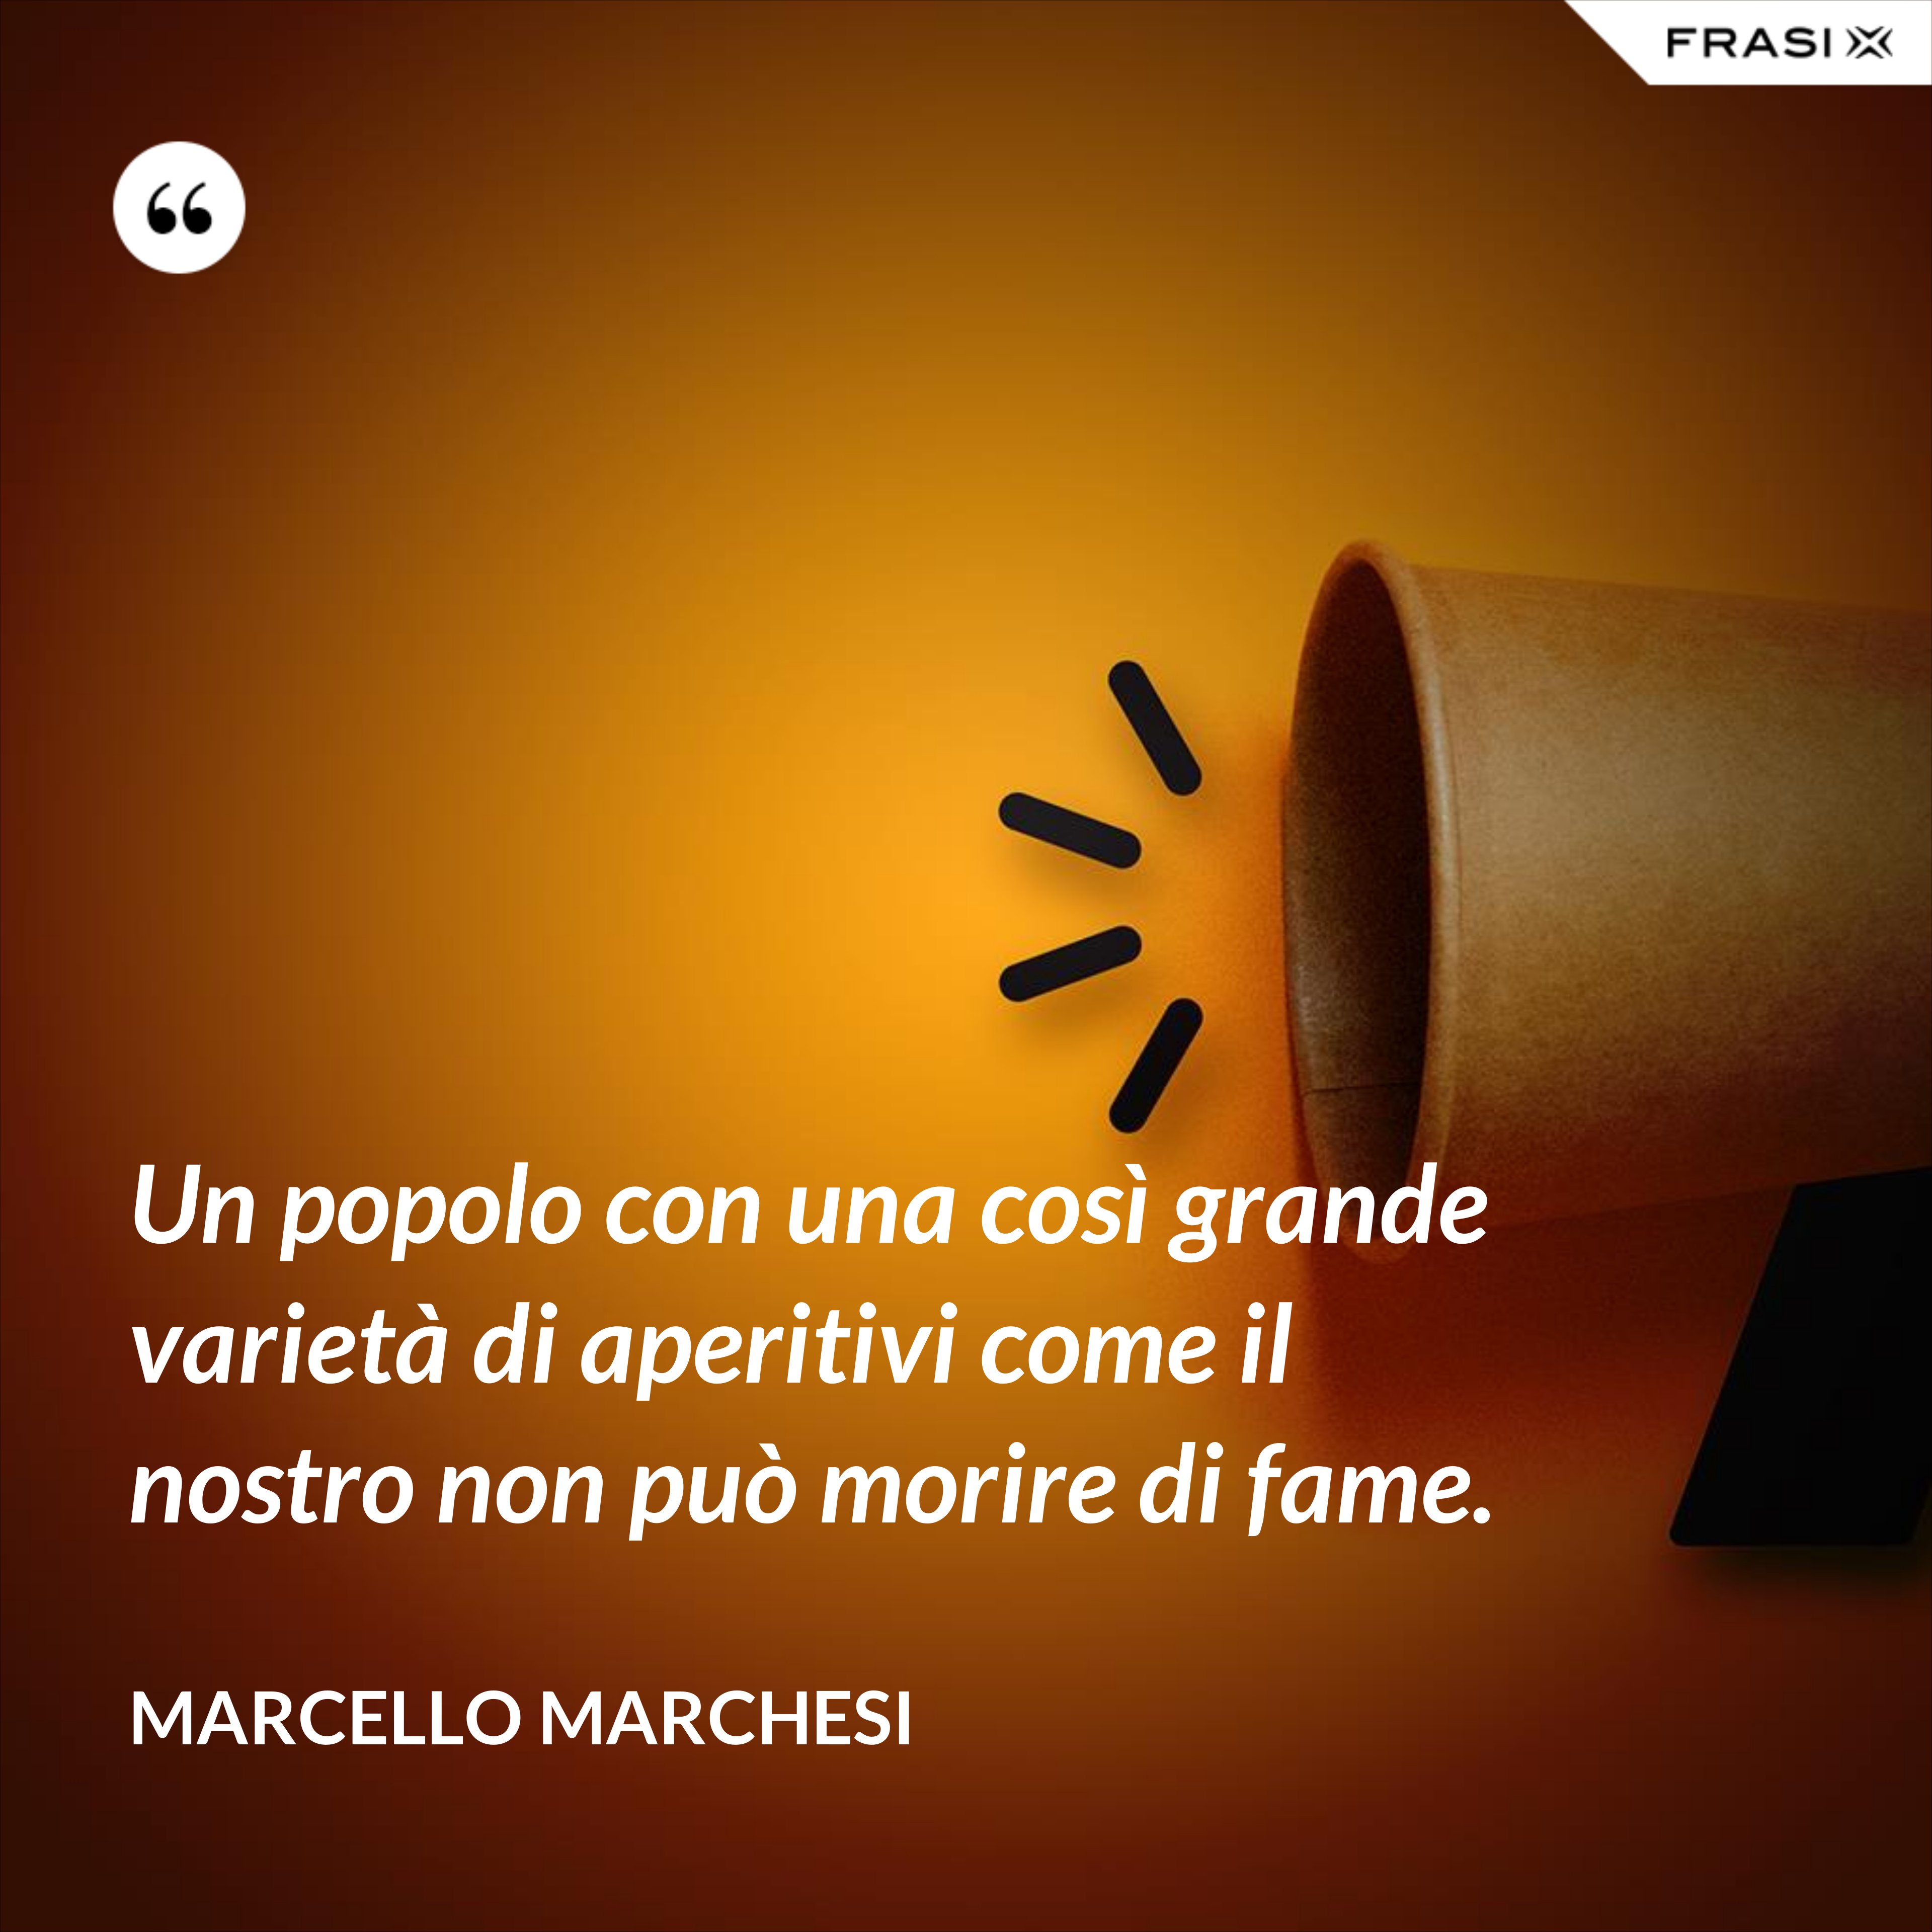 Un popolo con una così grande varietà di aperitivi come il nostro non può morire di fame. - Marcello Marchesi